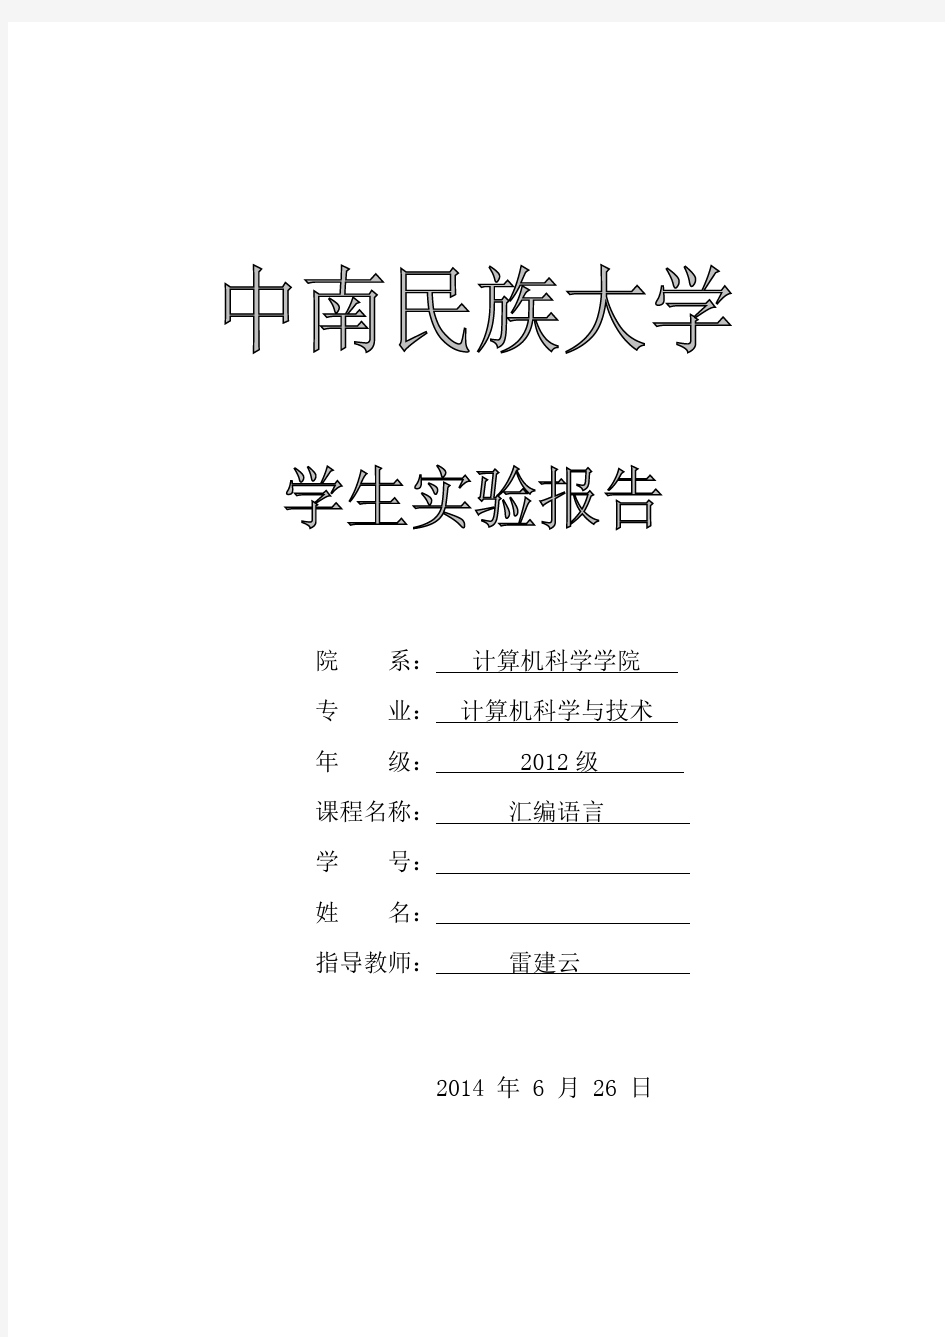 中南民族大学汇编语言实验报告